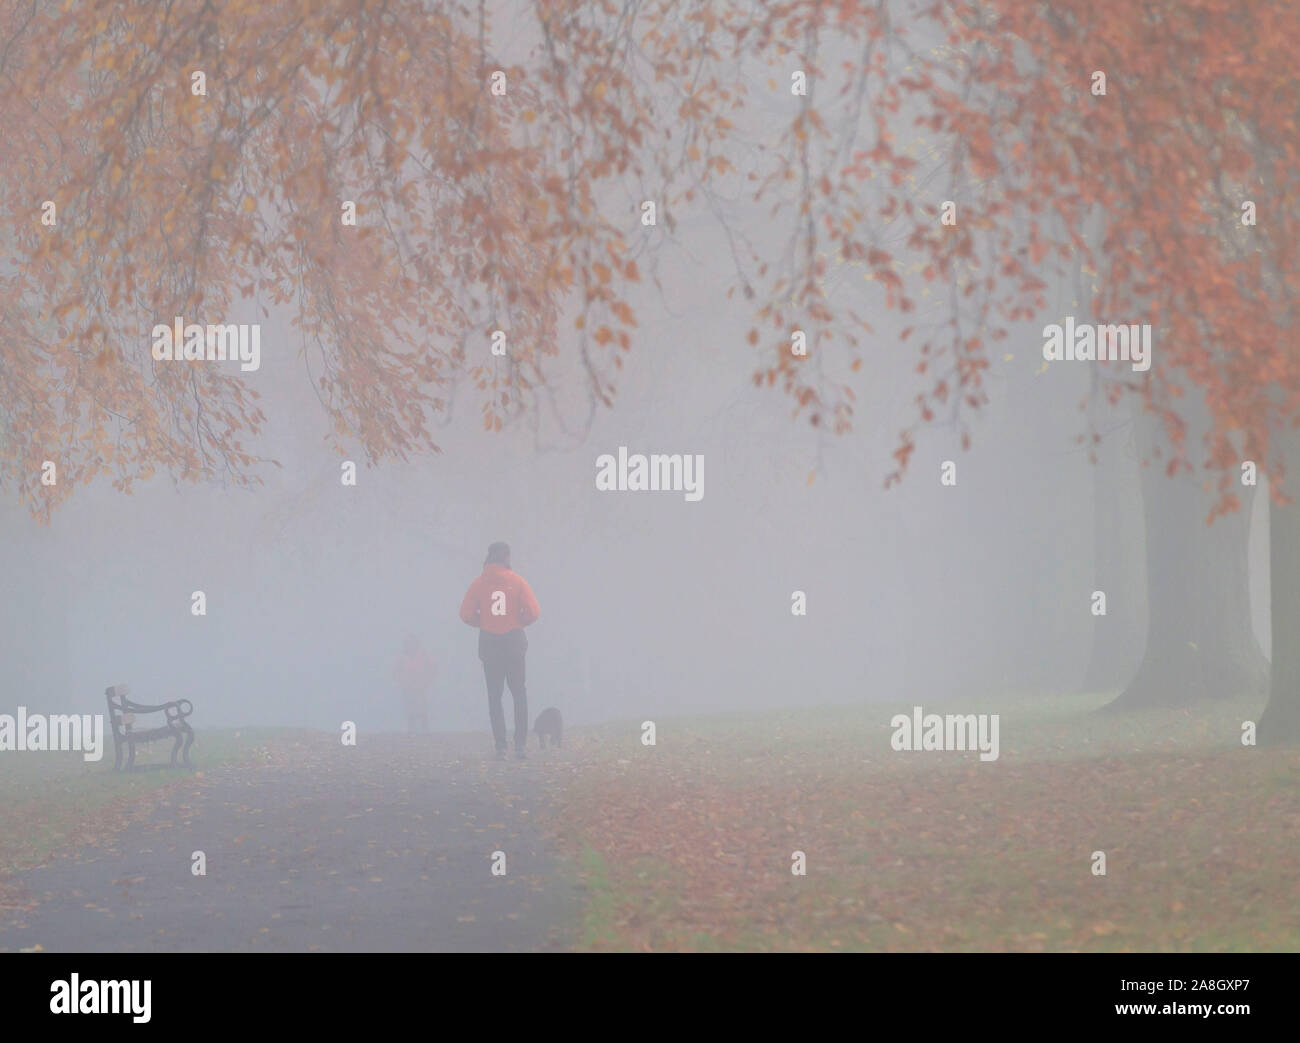 Northampton, UK, 9. November 2019, UK Wetter, nebligen kalten Morgen für die Wanderer in Abington Park, Herbst Farben angezeigt durch den Nebel. Credit: Keith J Smith./Alamy leben Nachrichten Stockfoto